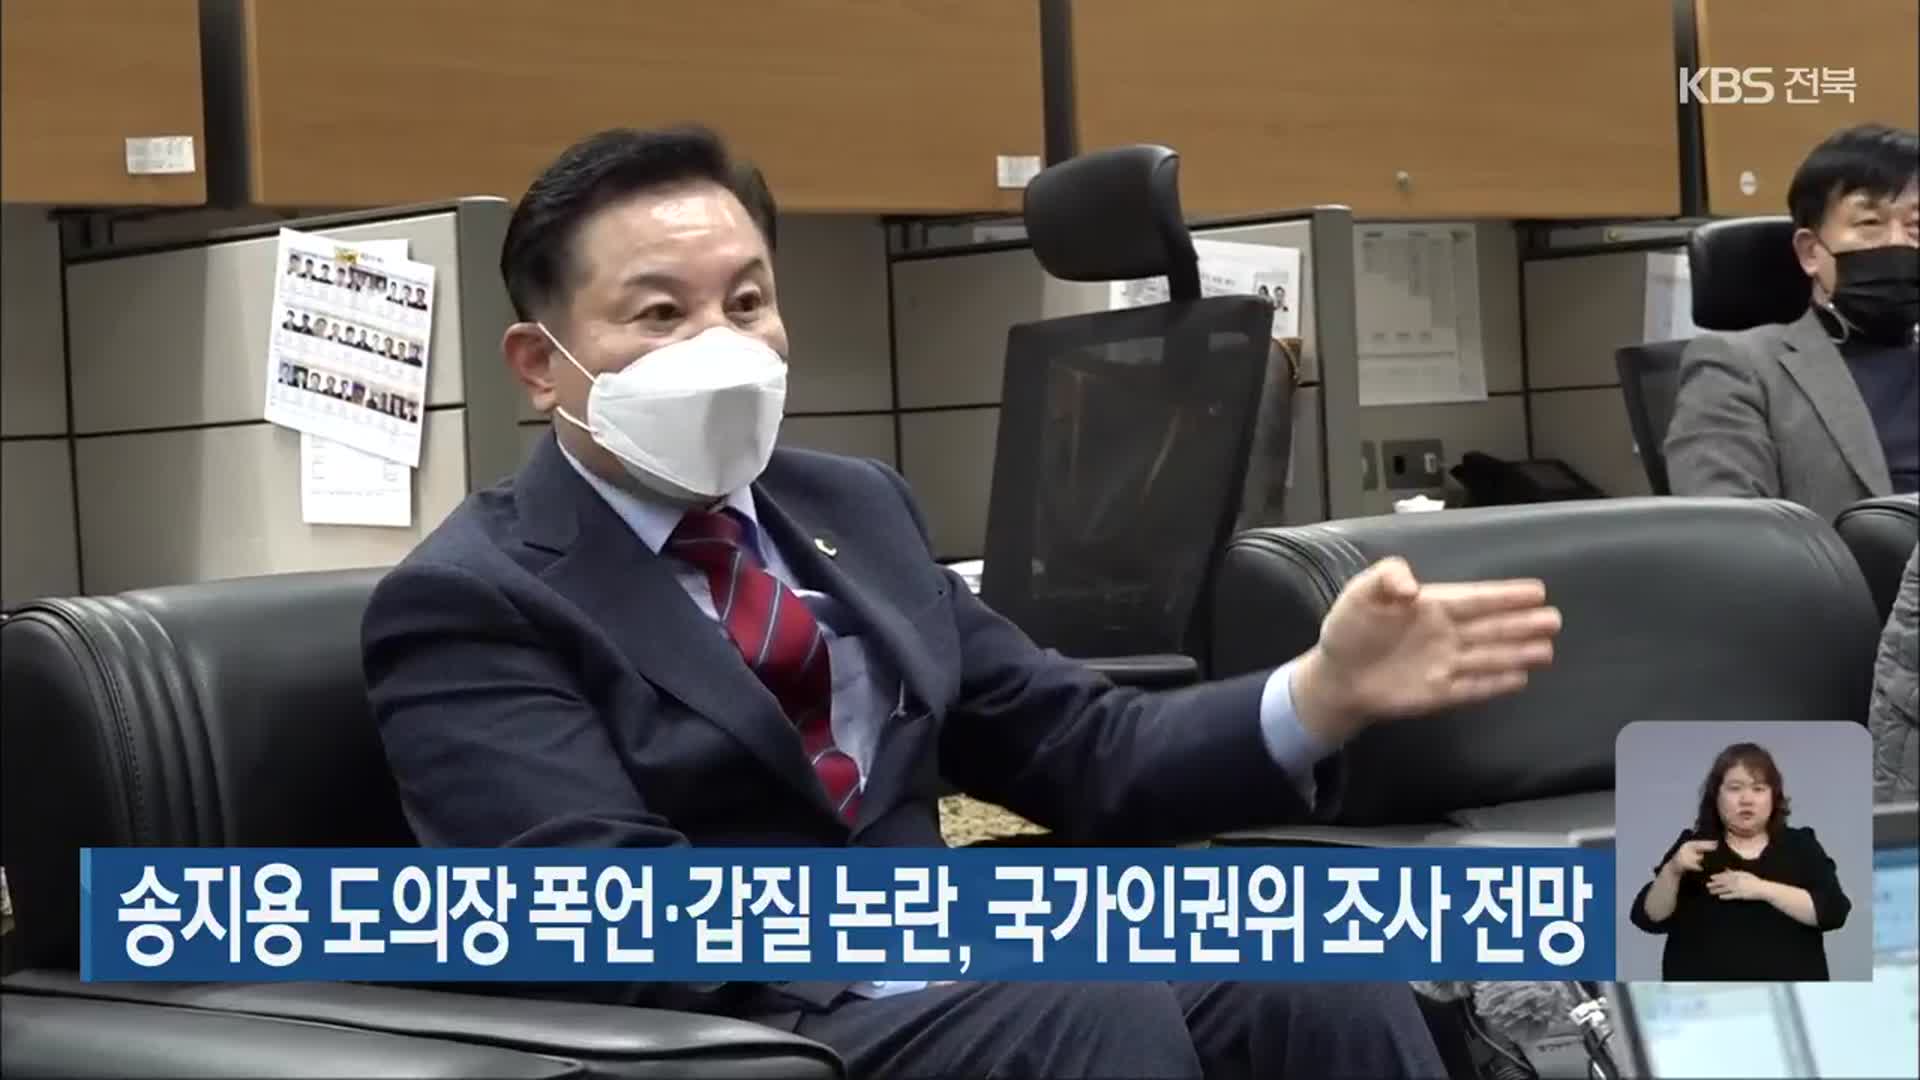 송지용 전북도의장 폭언·갑질 논란, 국가인권위 조사 전망